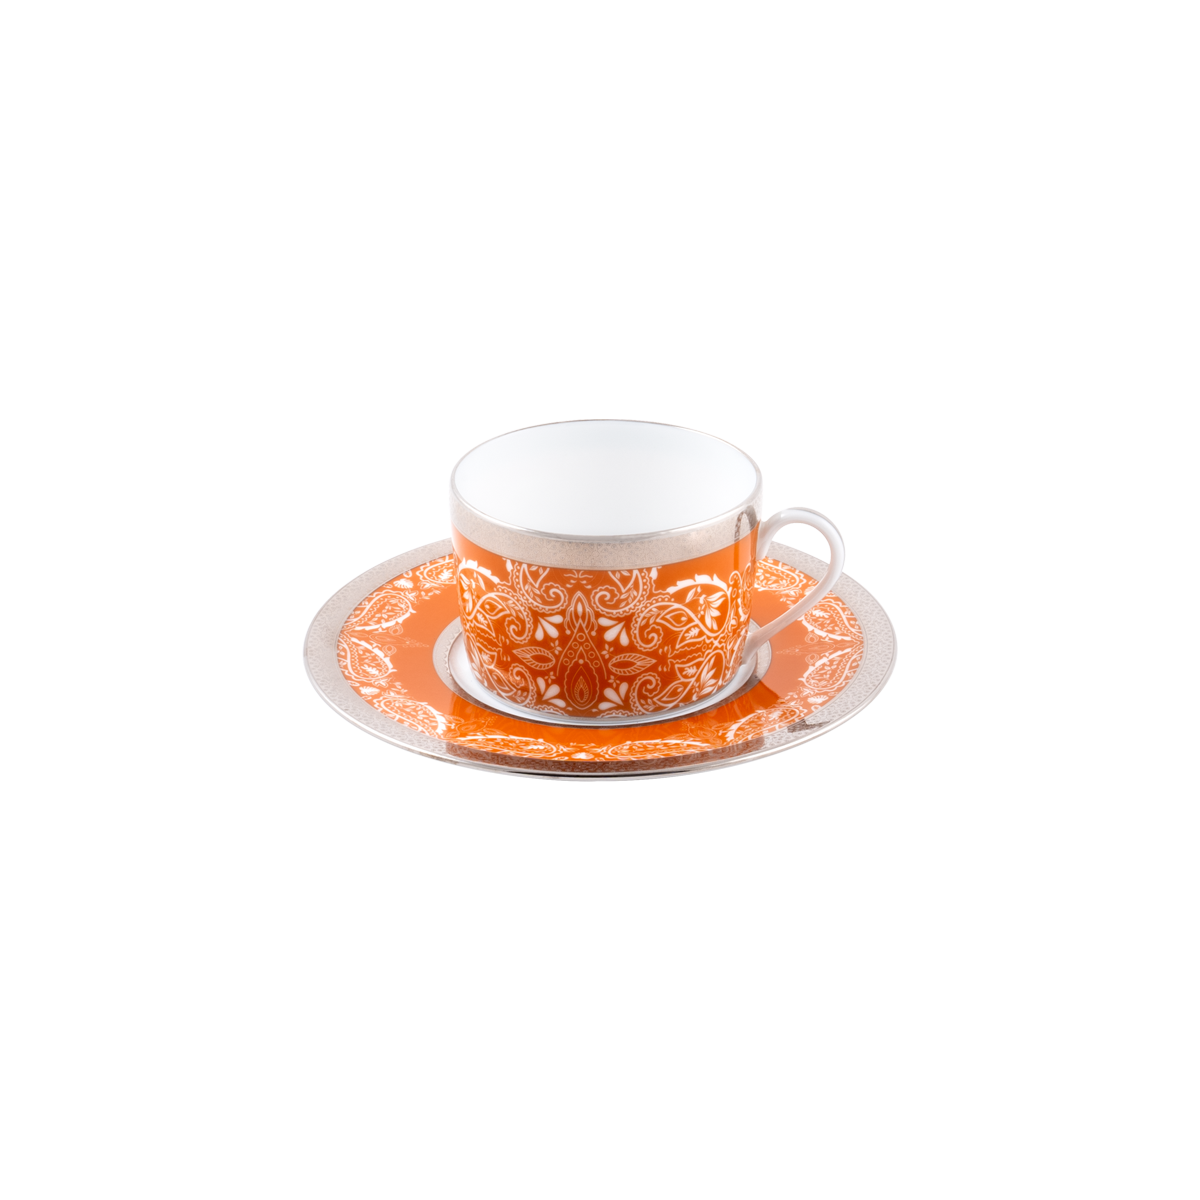 Set of 2 Teacups and Saucers - Romane Orange